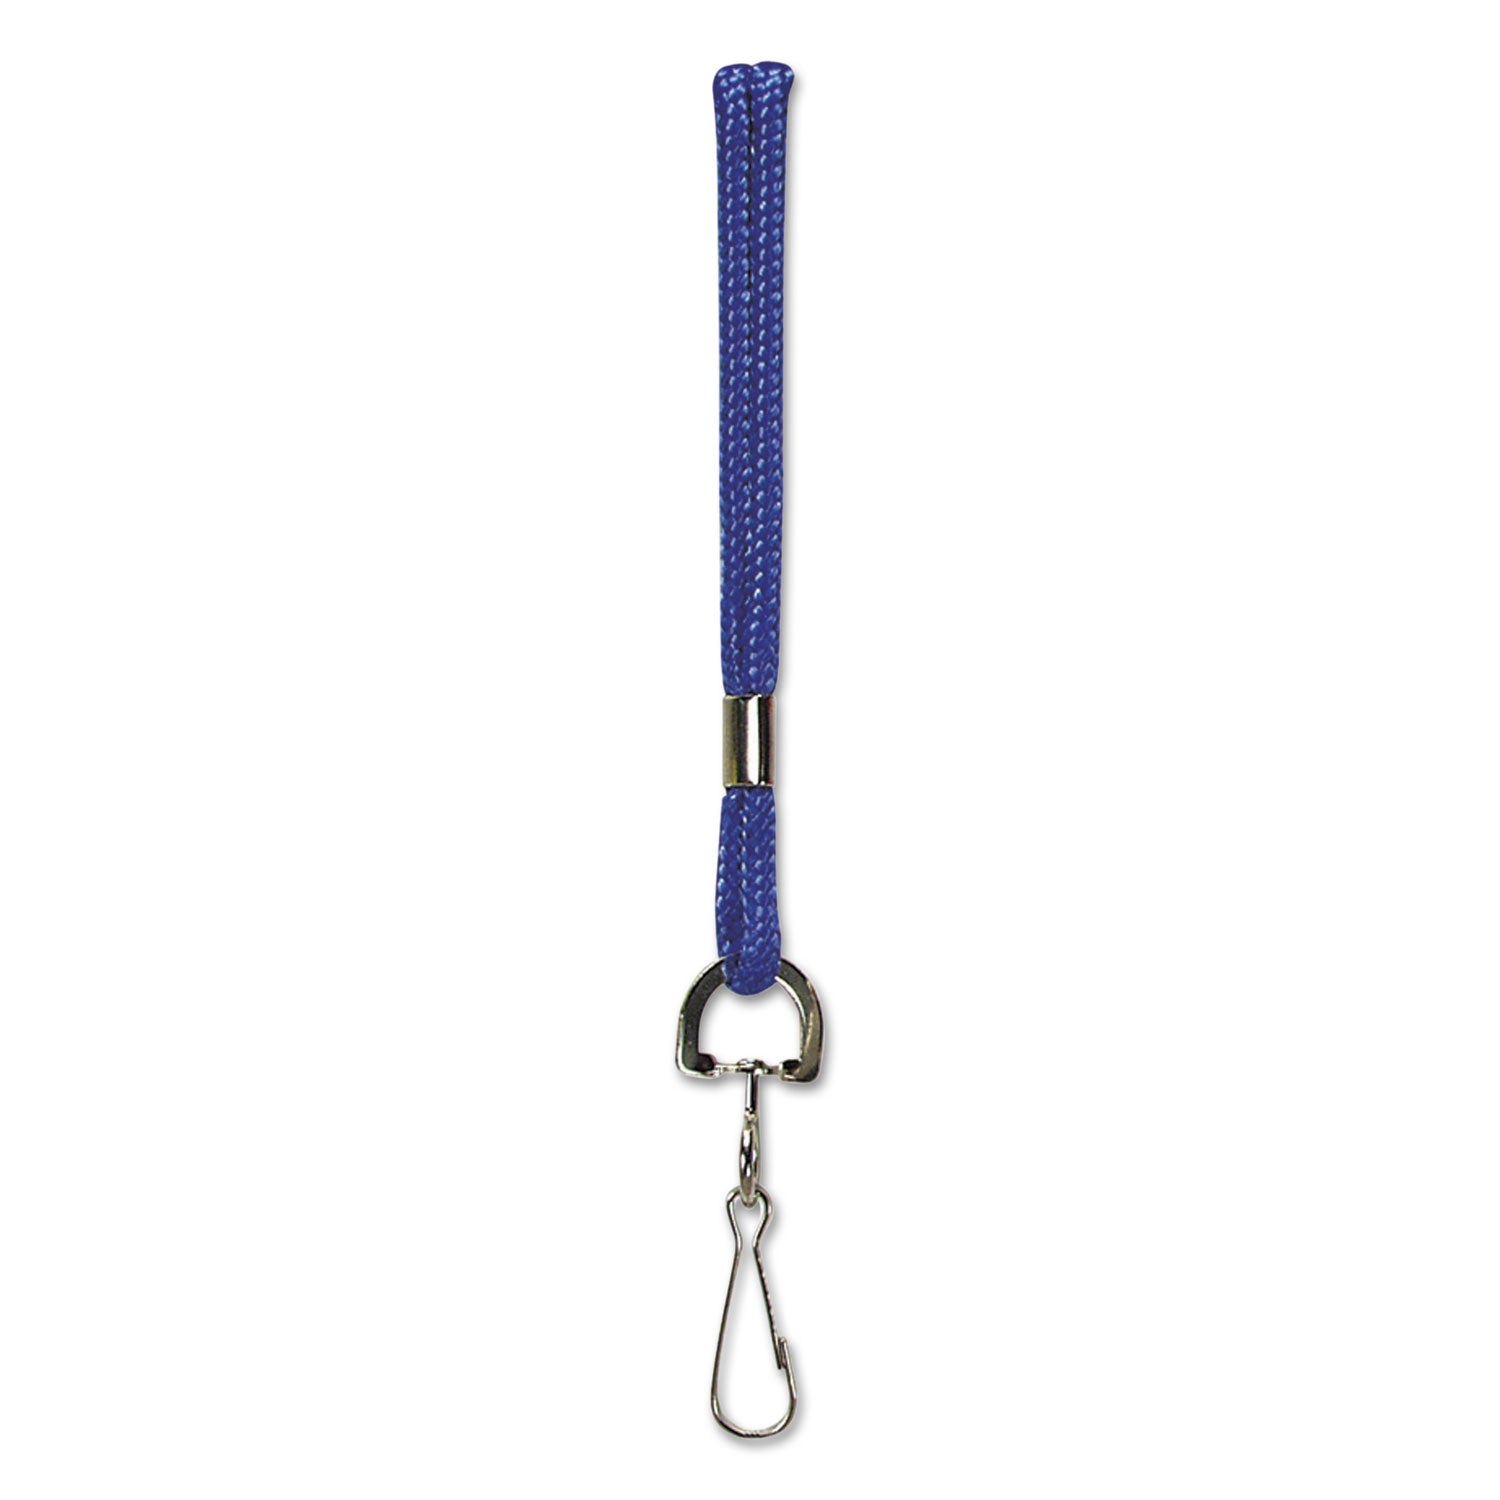 Rope Lanyard, Metal Hook Fastener, 36" Long, Nylon, Blue - 